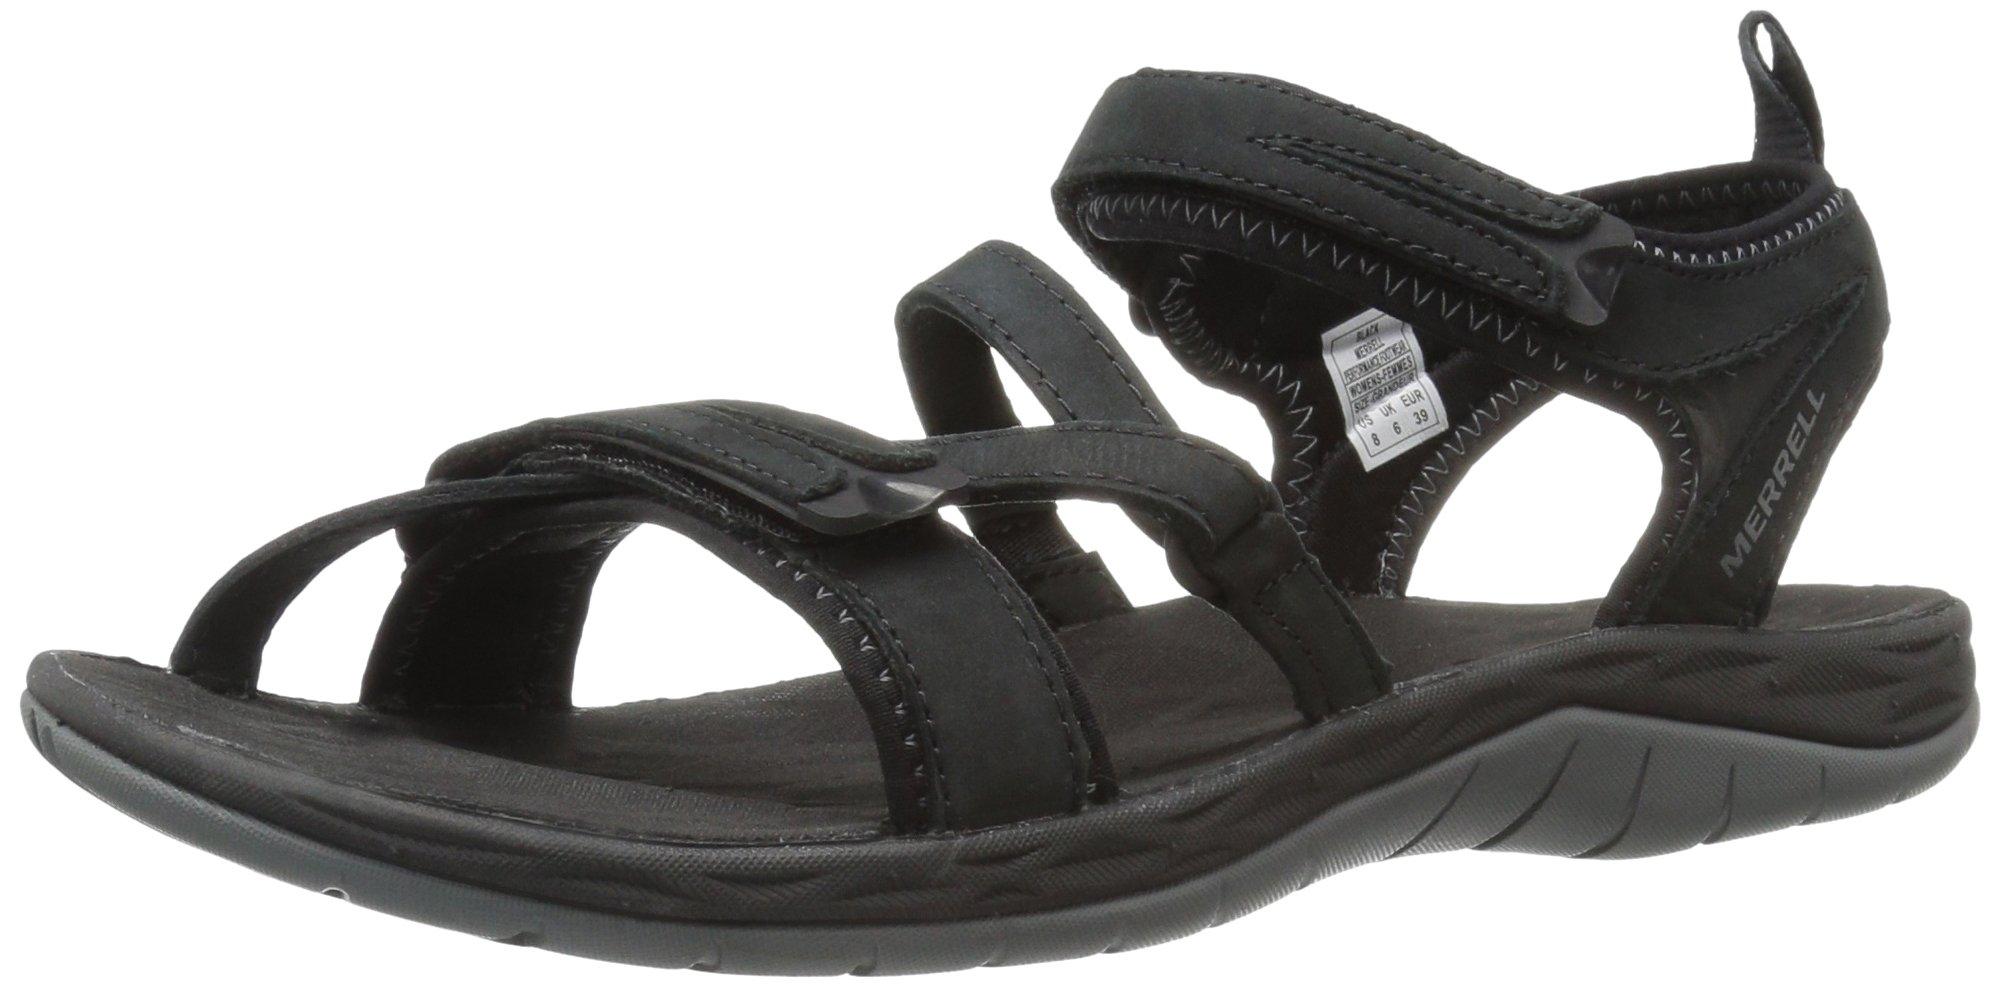 fremsætte Kro Hound Merrell Siren Strap Q2 Waterproof Leather Walking Sandals in Black | Lyst